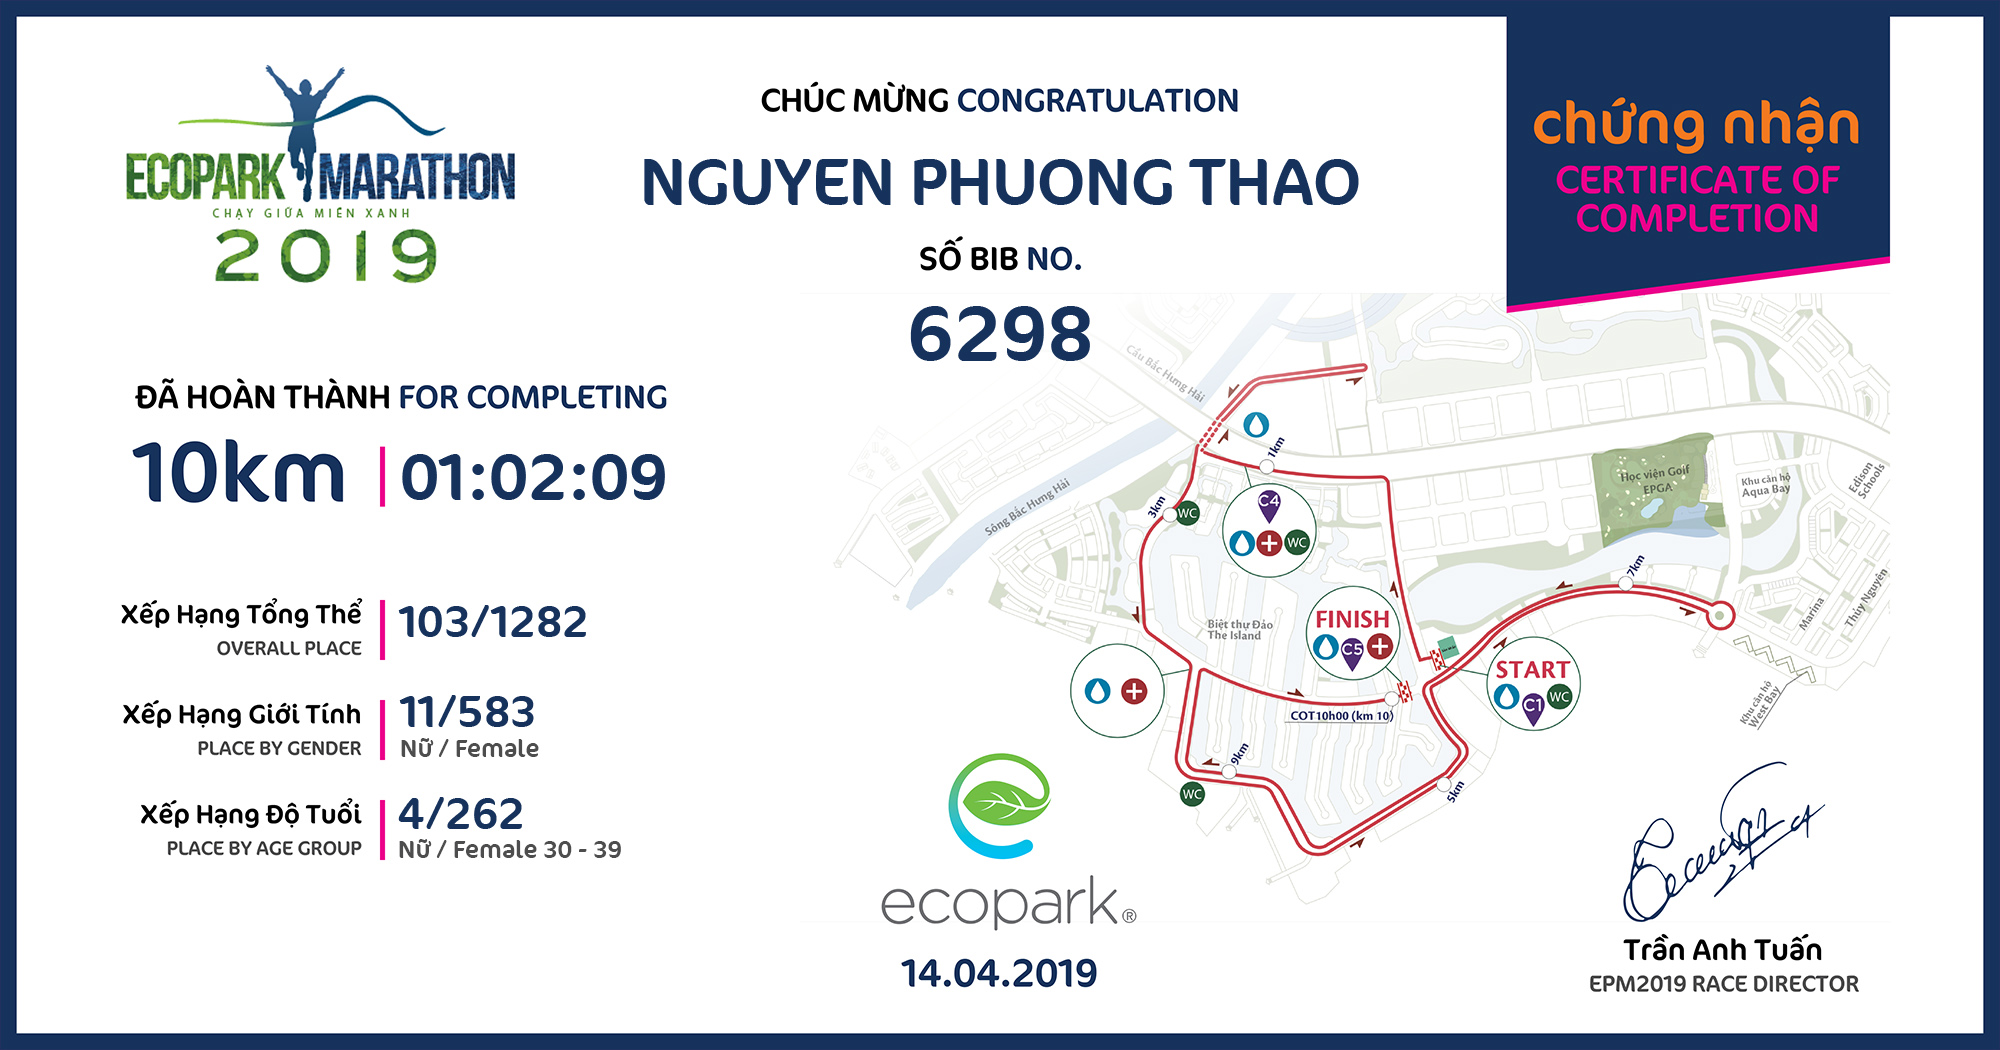 6298 - NGUYEN PHUONG THAO